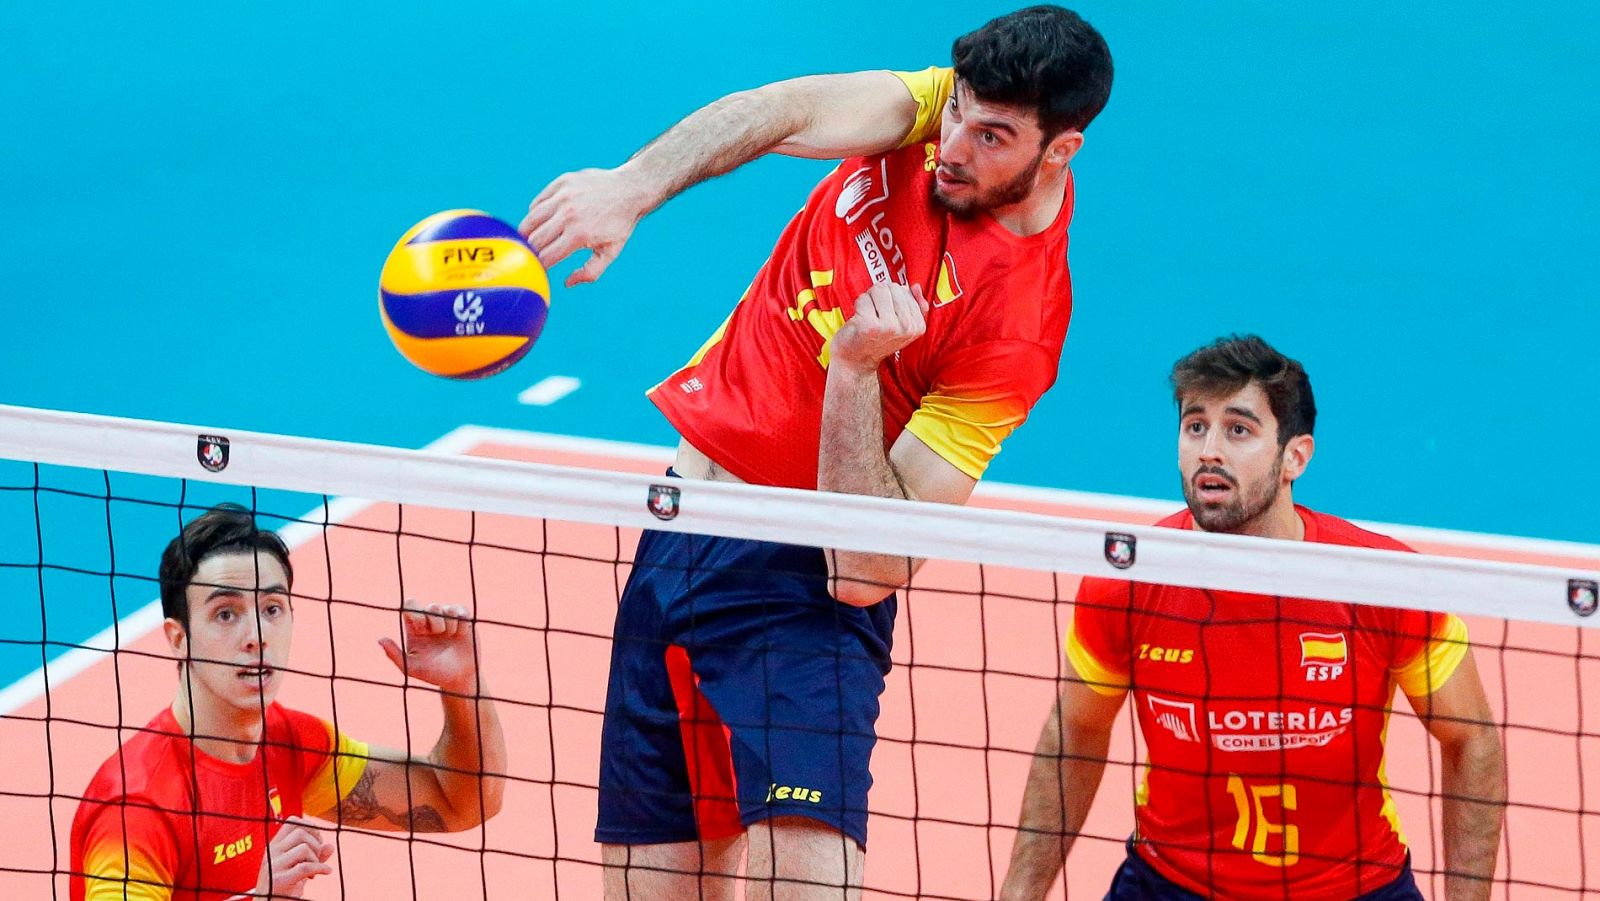 Europeo de voleibol - España logra ante Austria su primera victoria